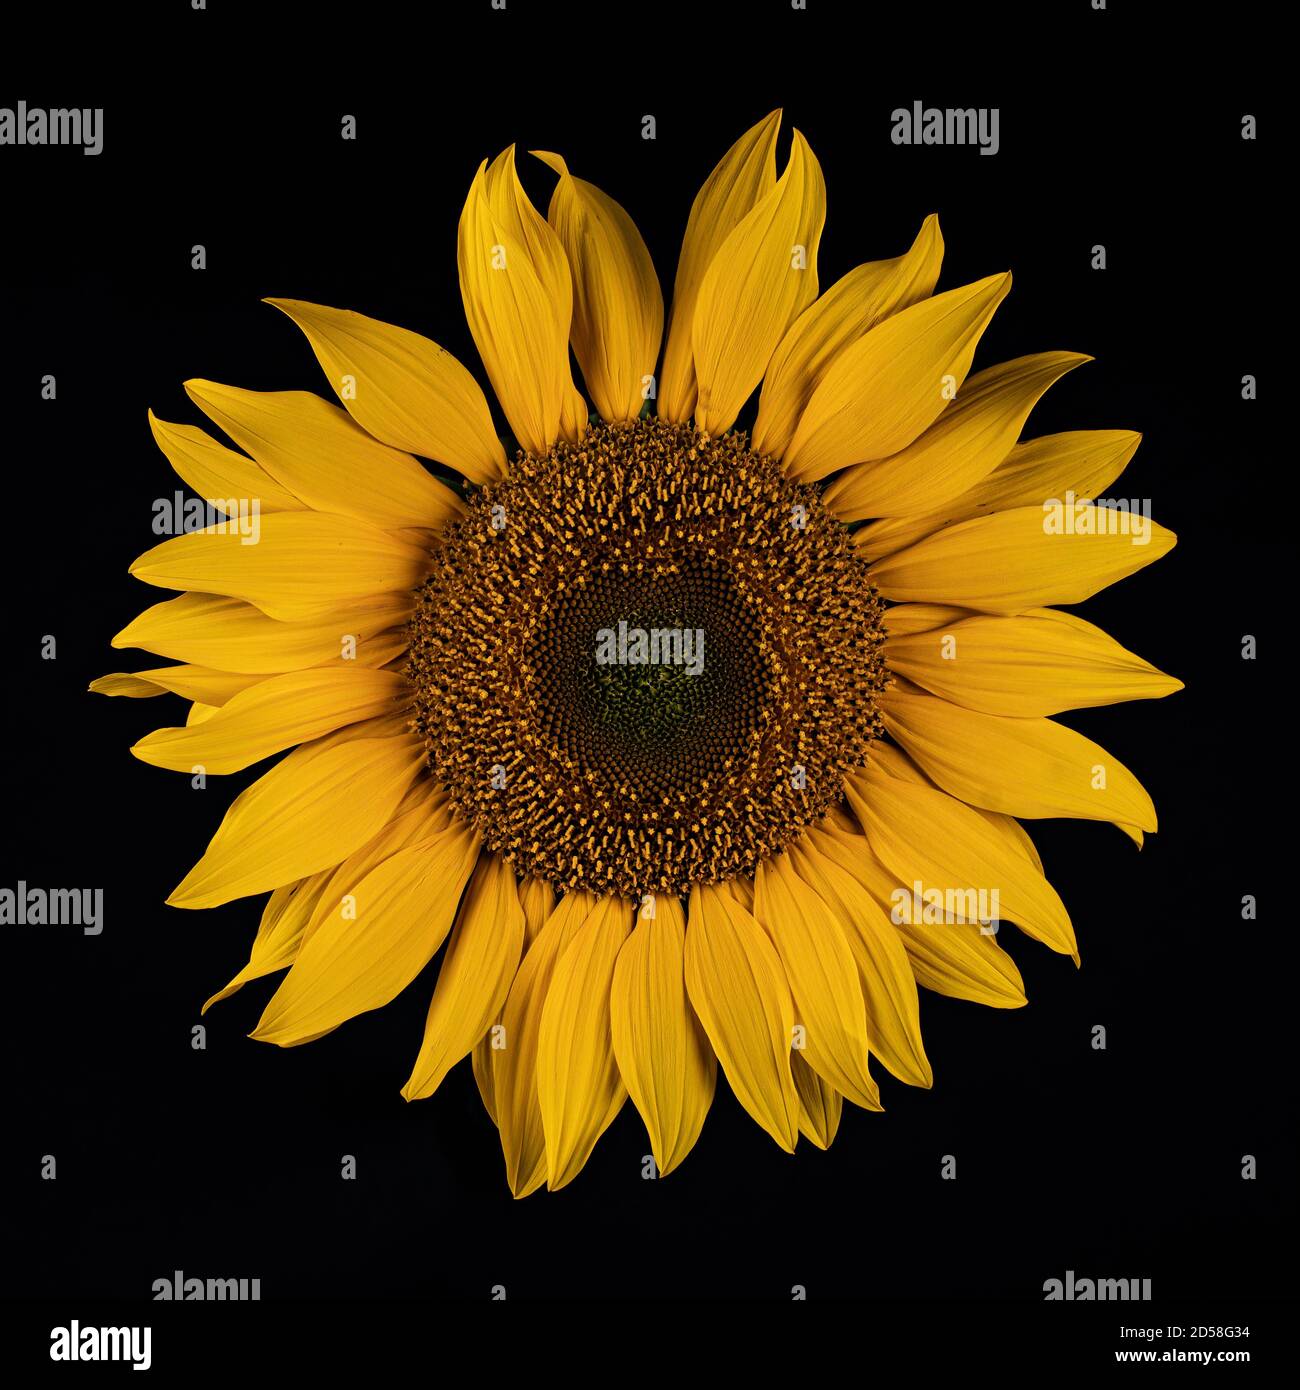 Razorsharp image of an isolated sunflower shot on a black background Stock Photo